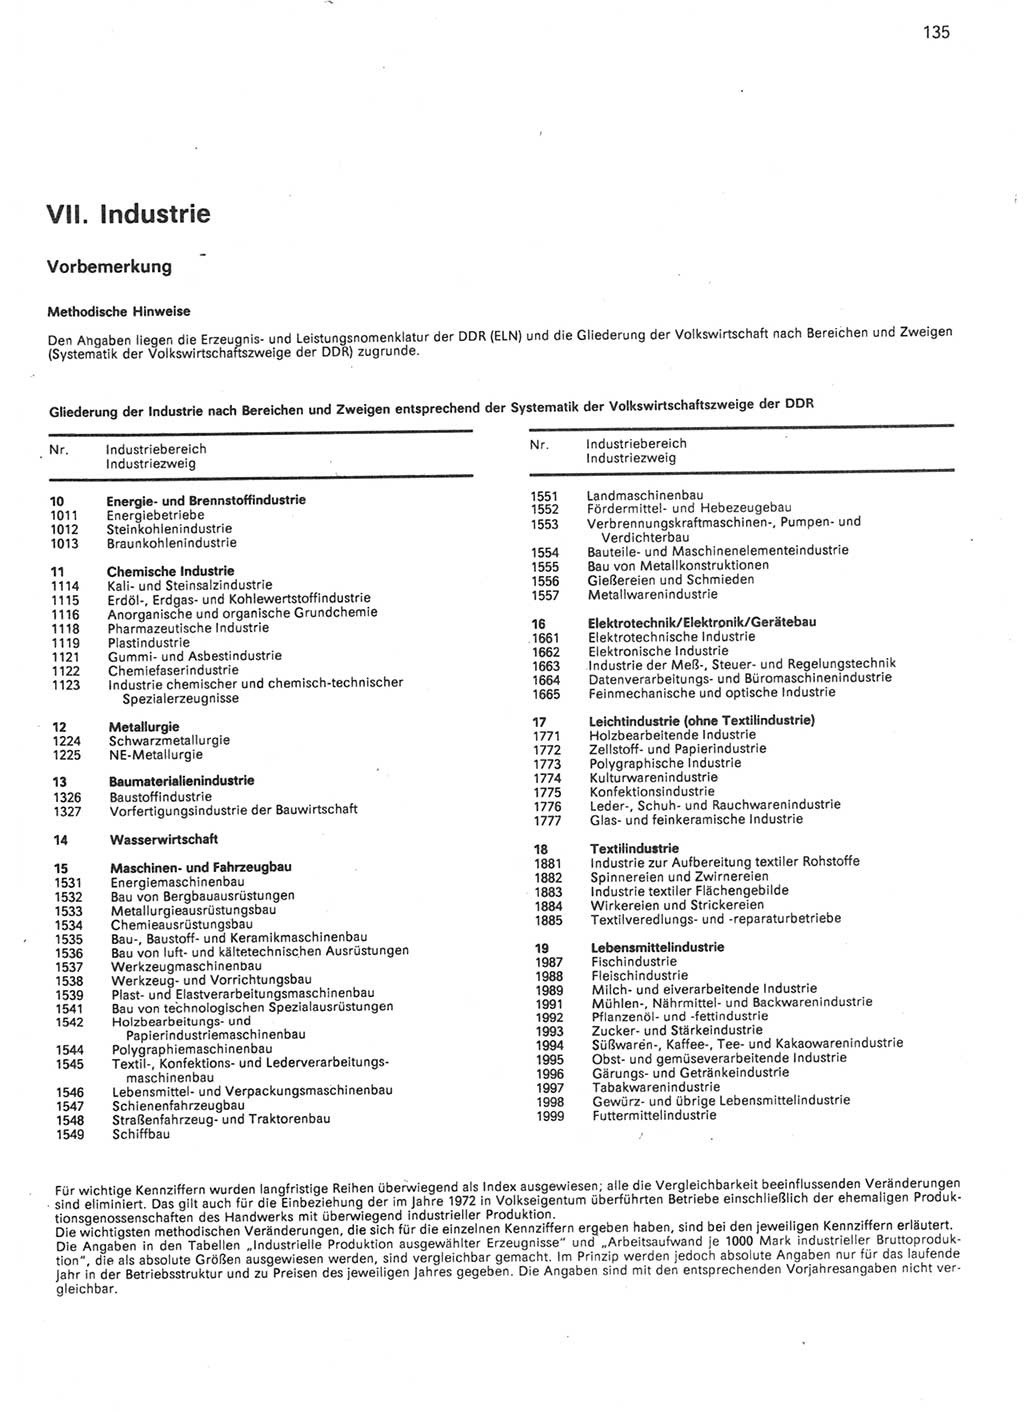 Statistisches Jahrbuch der Deutschen Demokratischen Republik (DDR) 1986, Seite 135 (Stat. Jb. DDR 1986, S. 135)